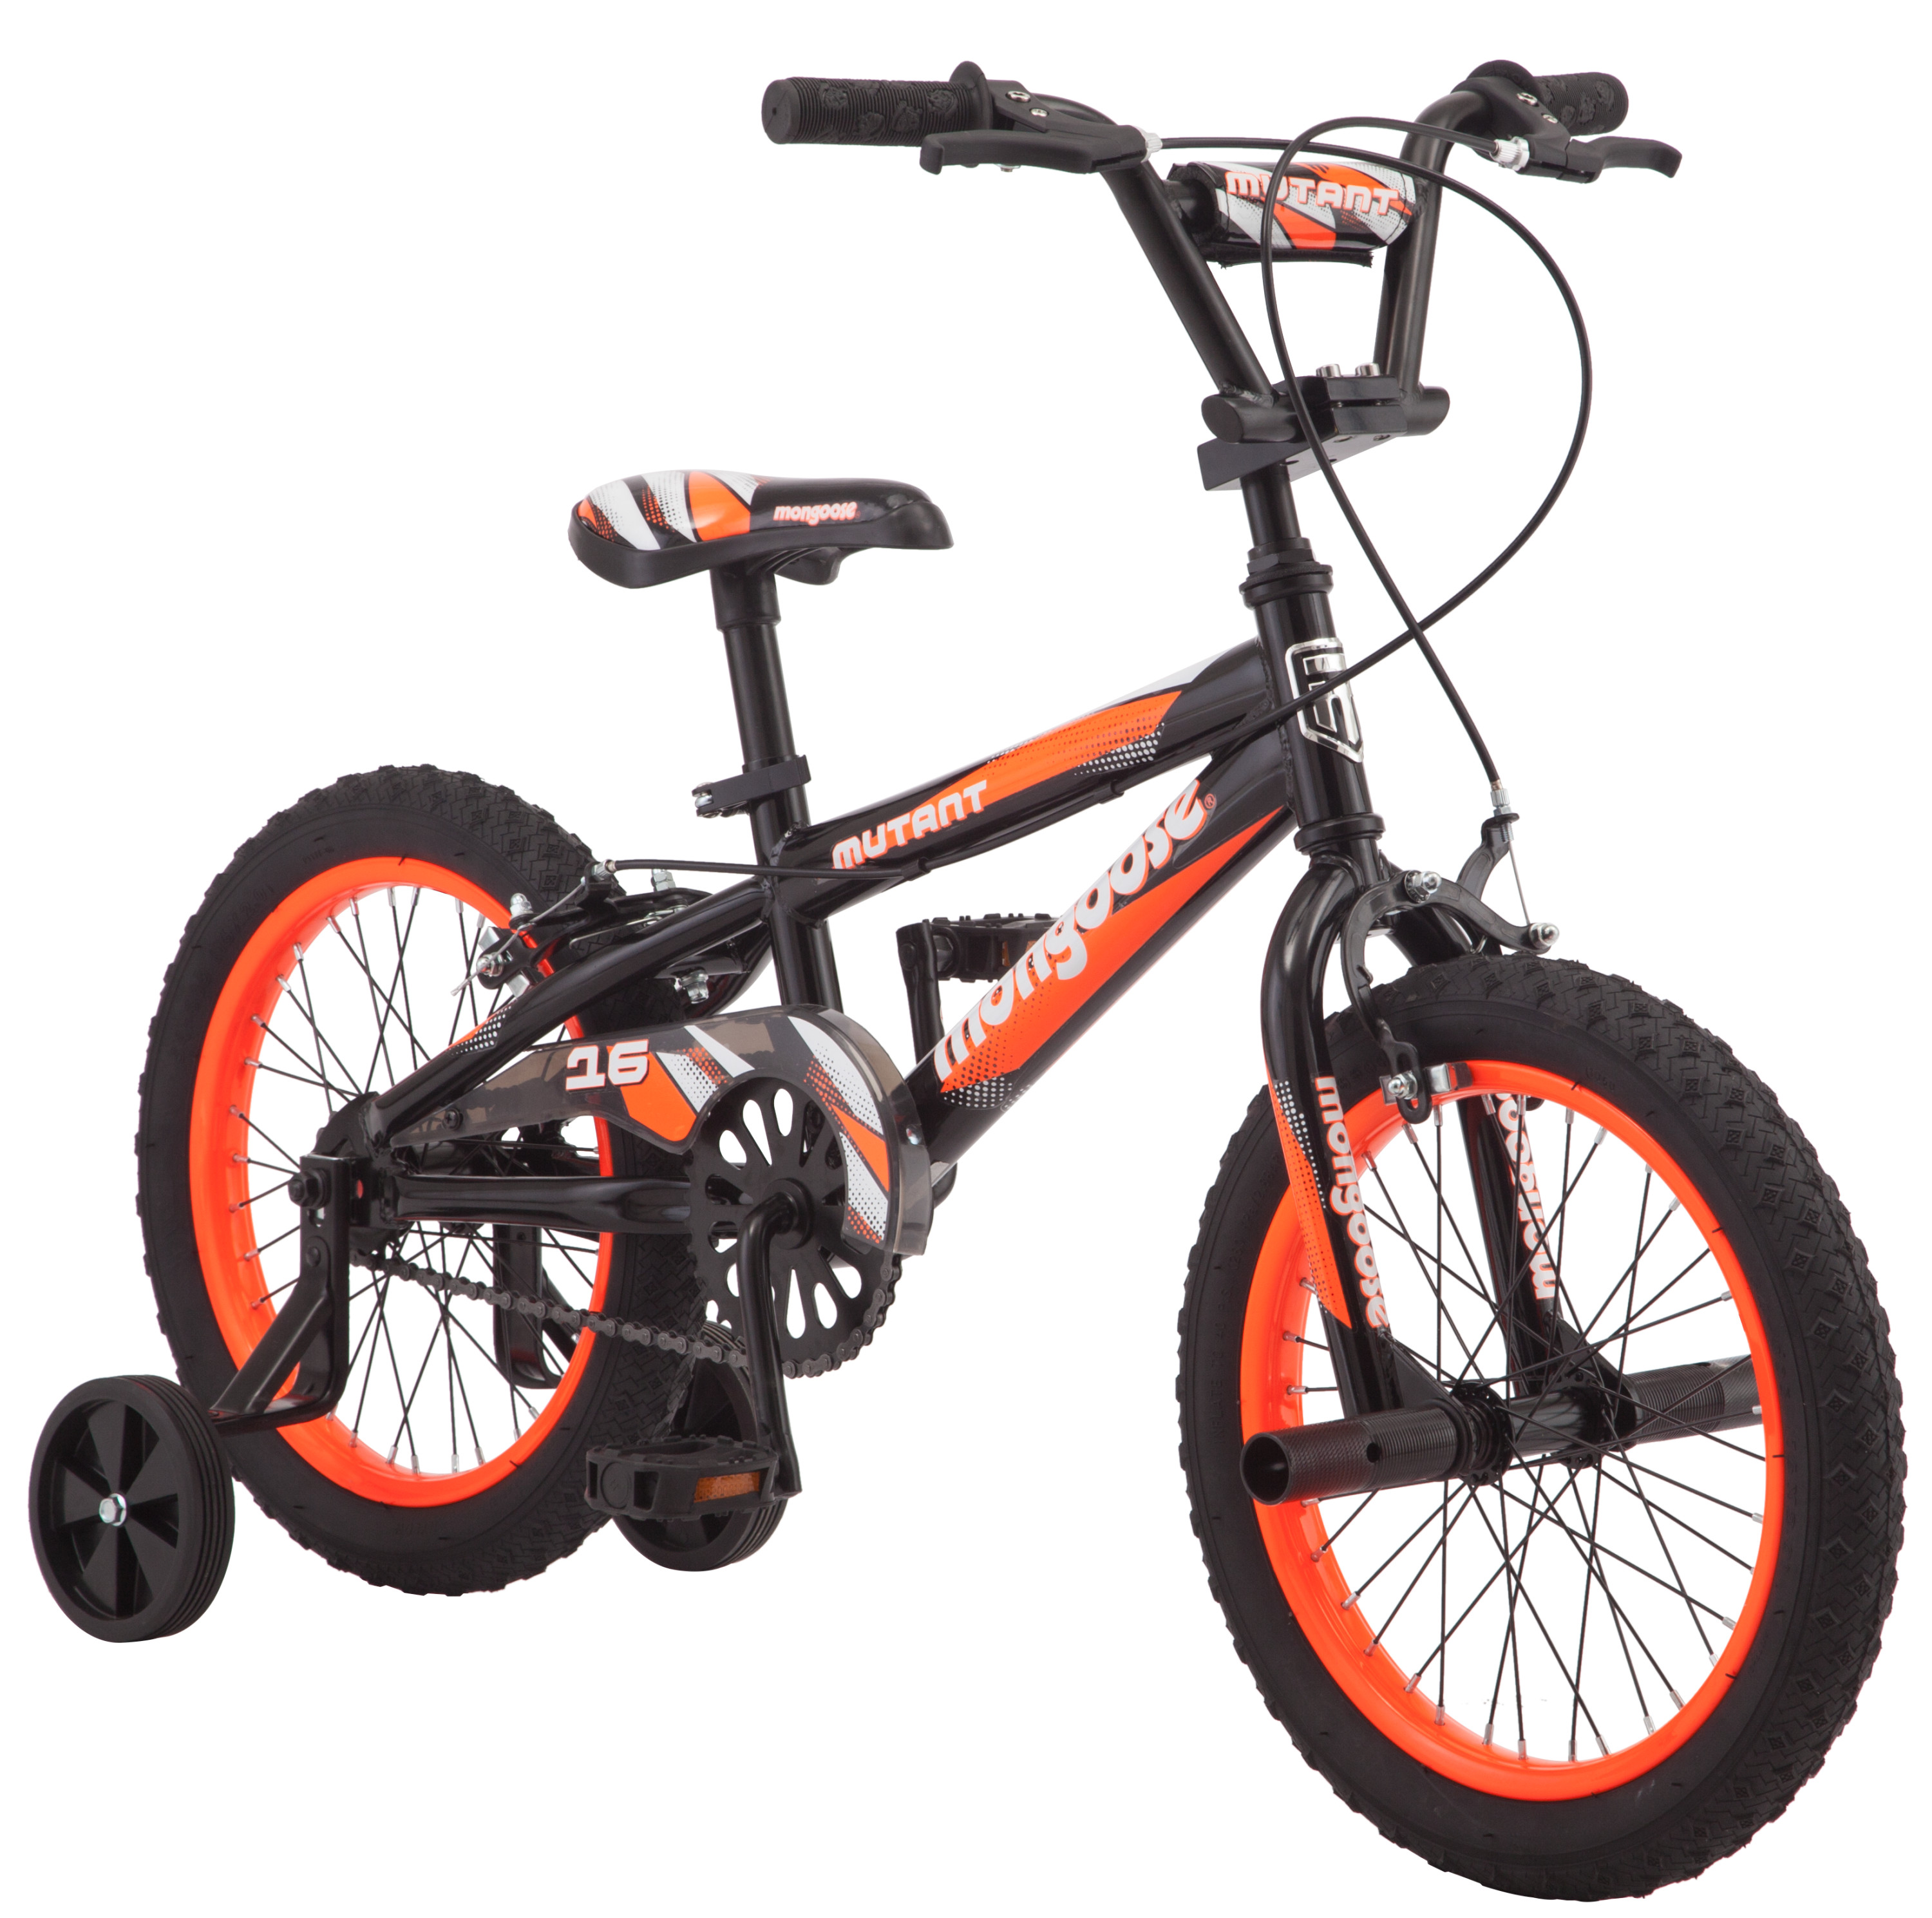 Mongoose Mutant 16 inch Kid's BMX Bike, Boys/Girls, Ages 3-5, Black & Orange - image 1 of 9